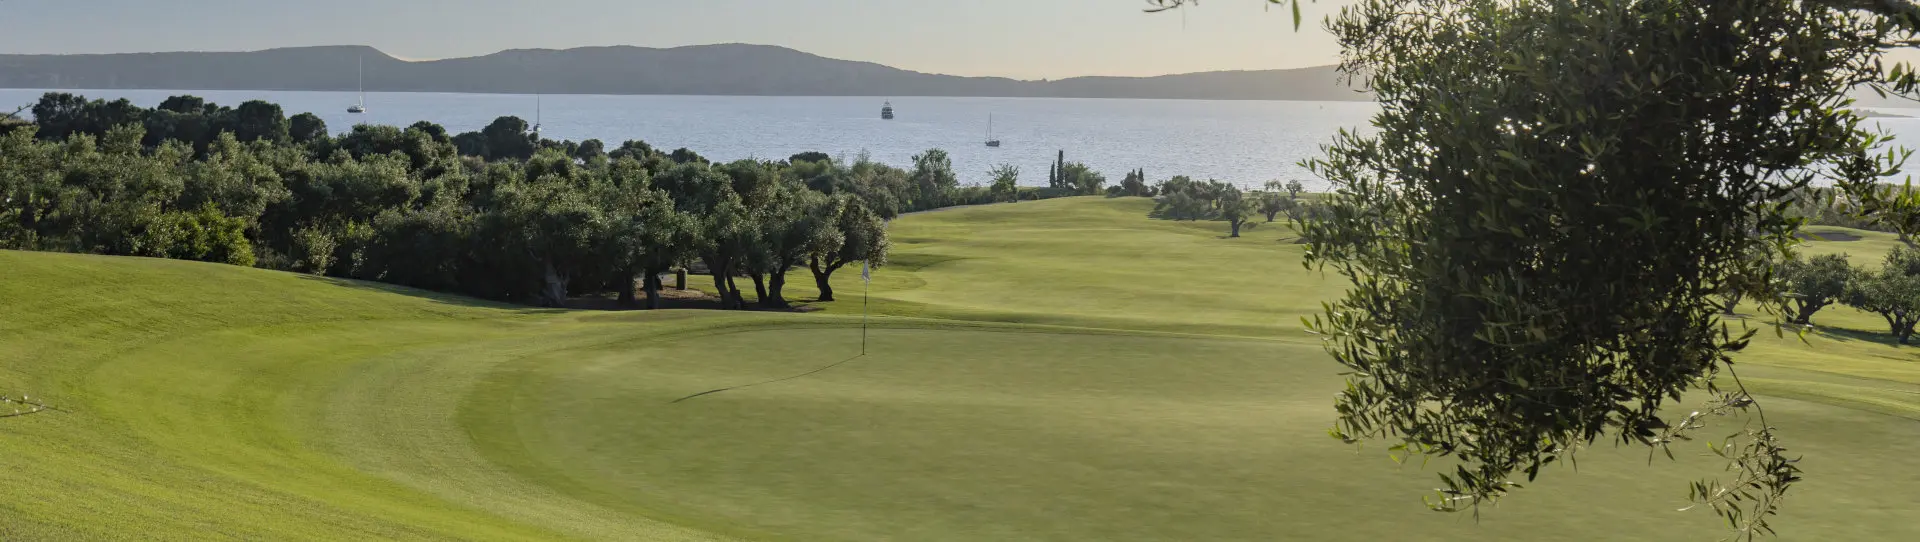 Greece golf courses - The Bay Course - Photo 3